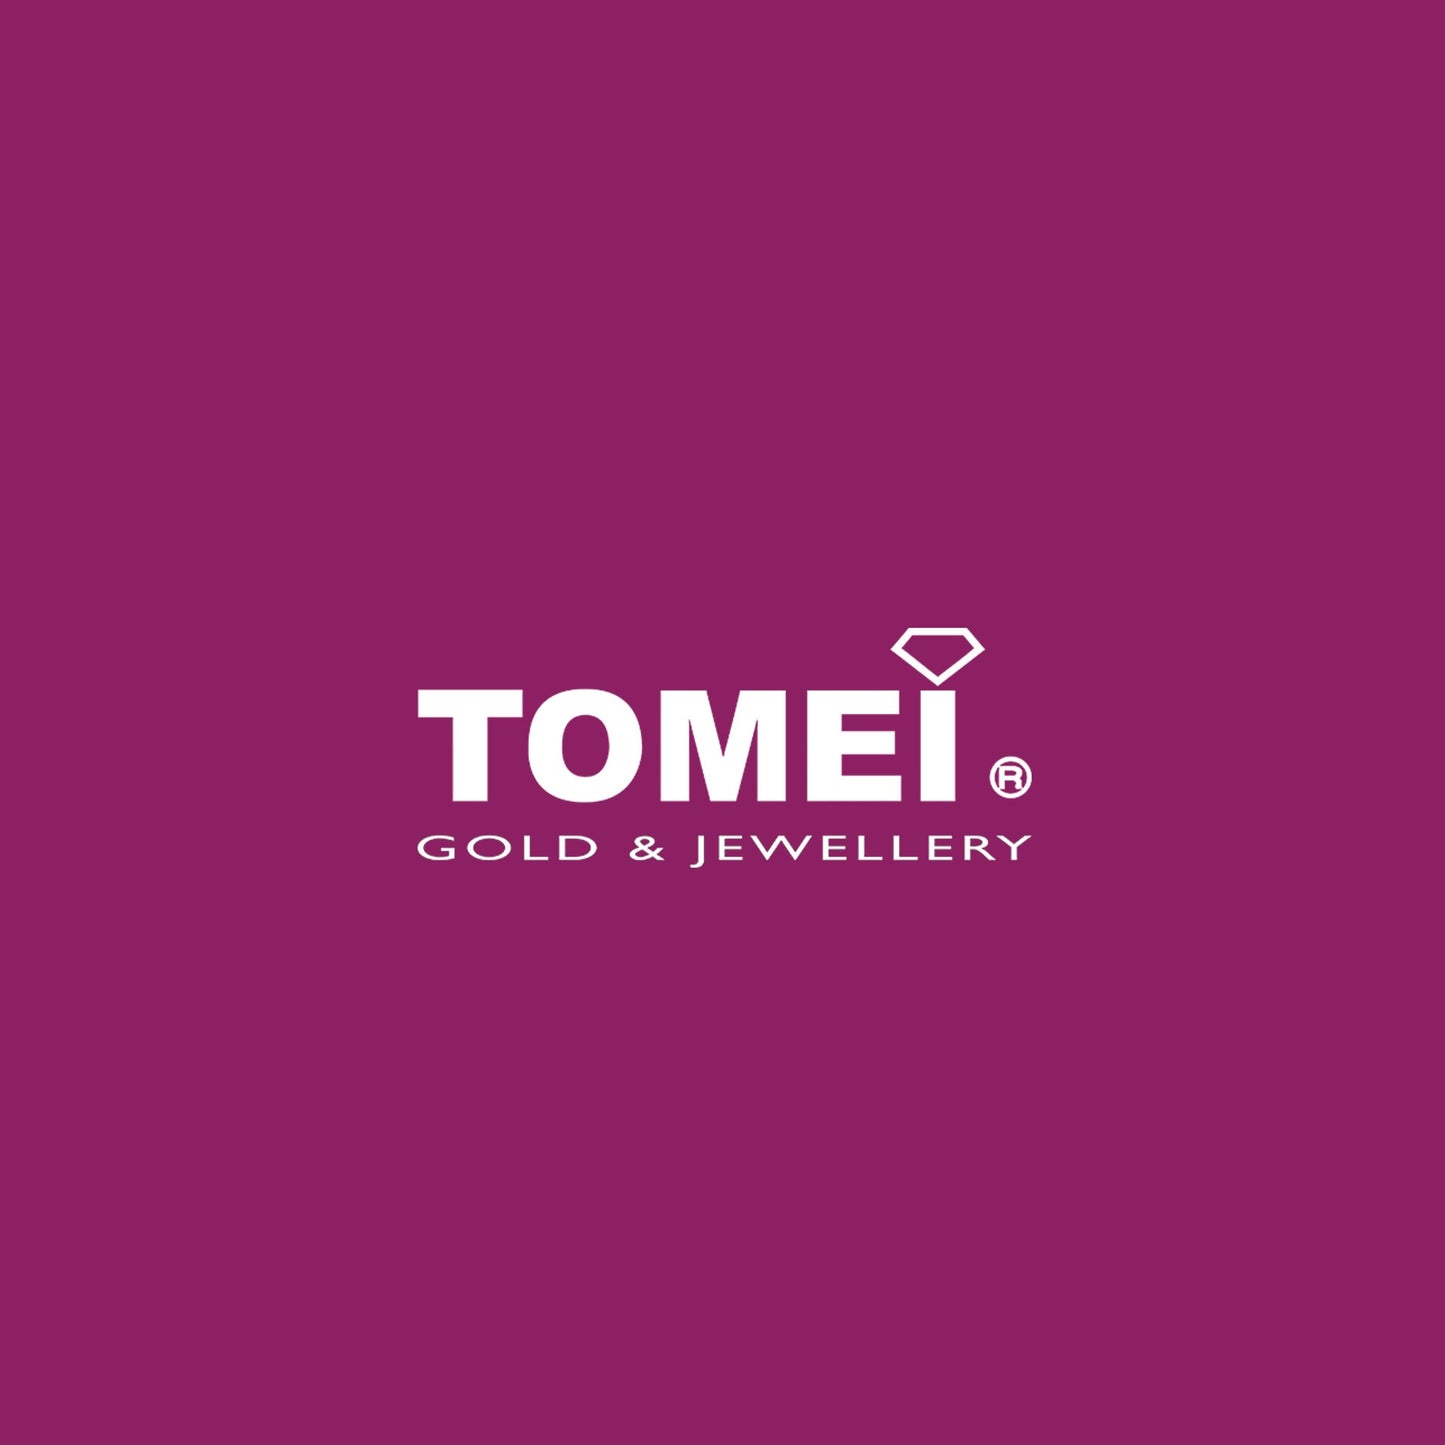 TOMEI Pearl Diamond Pendant, White Gold 750 (P6201)